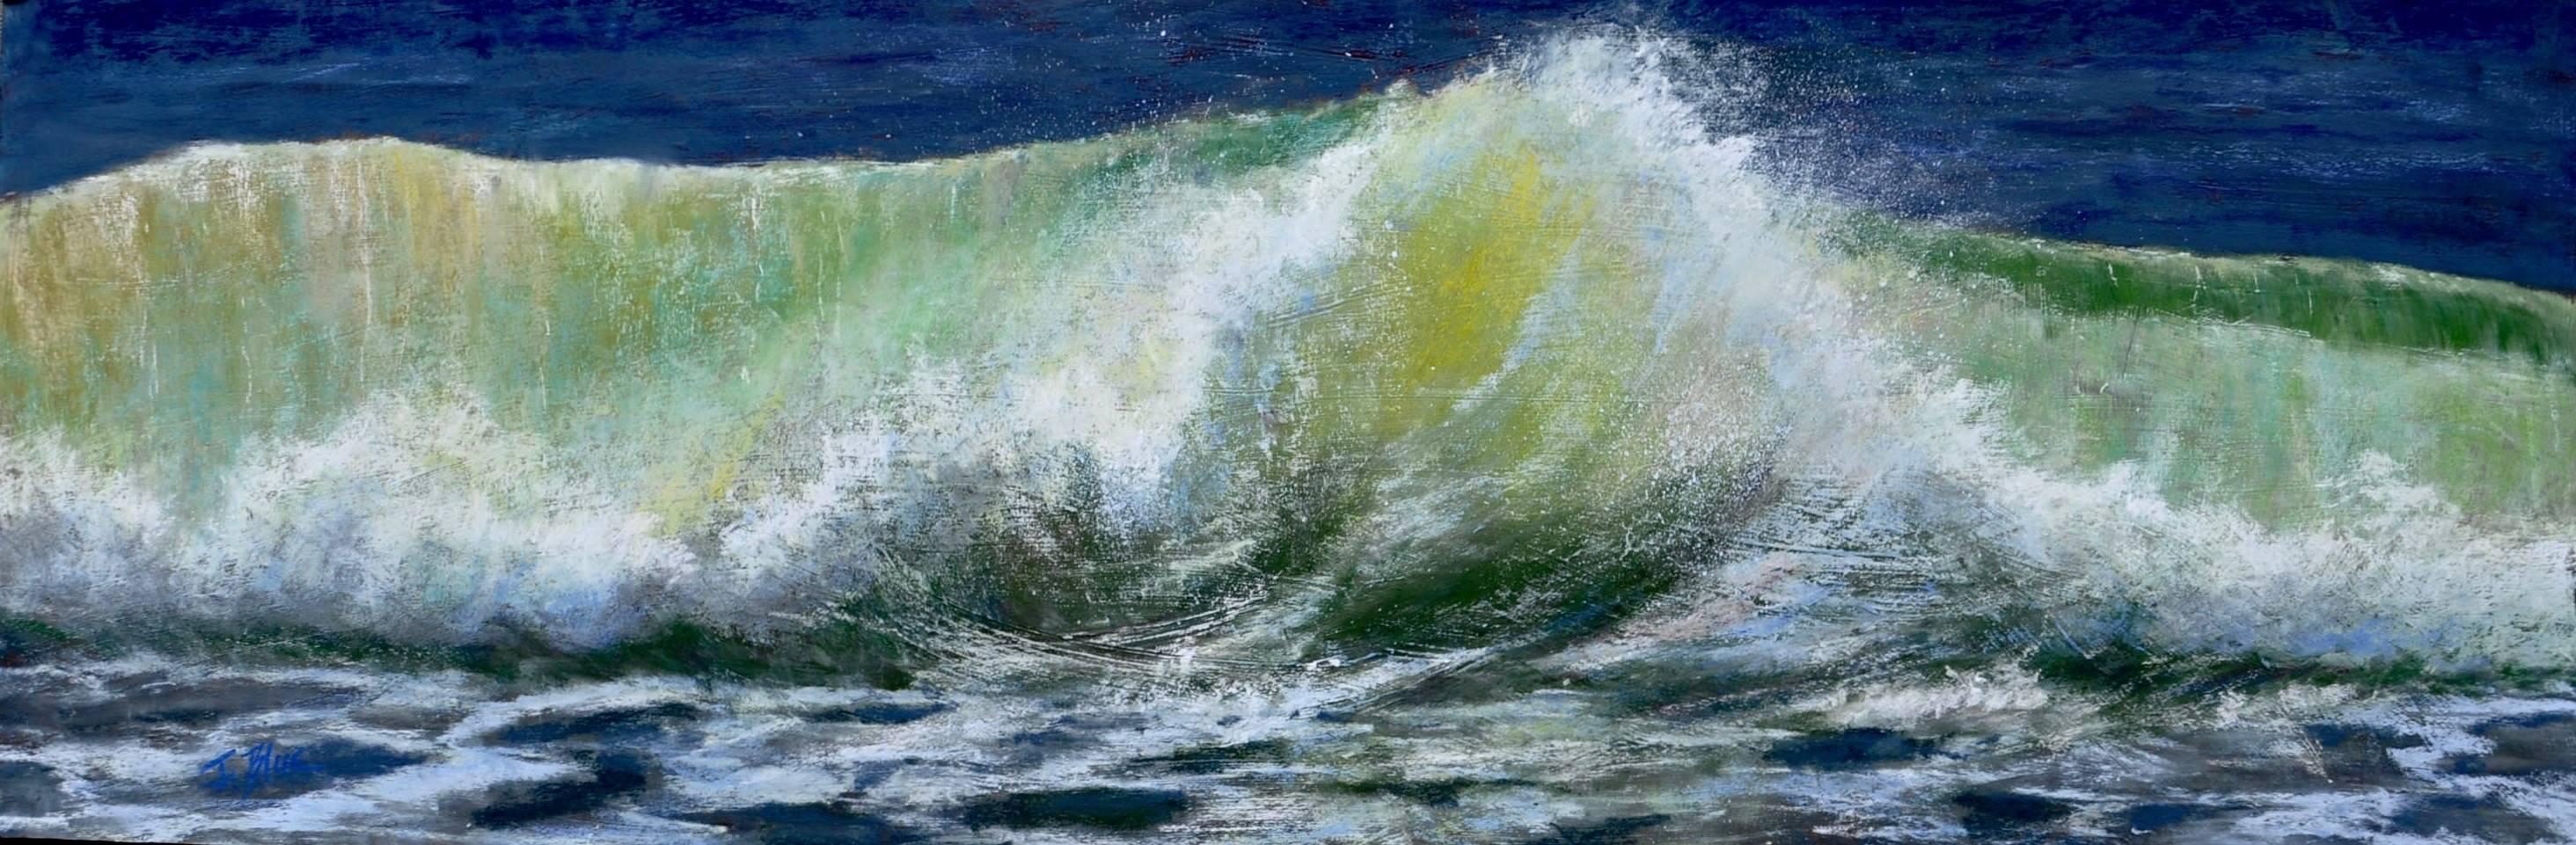 Jacquelyn Blue Landscape Painting - Wave Action